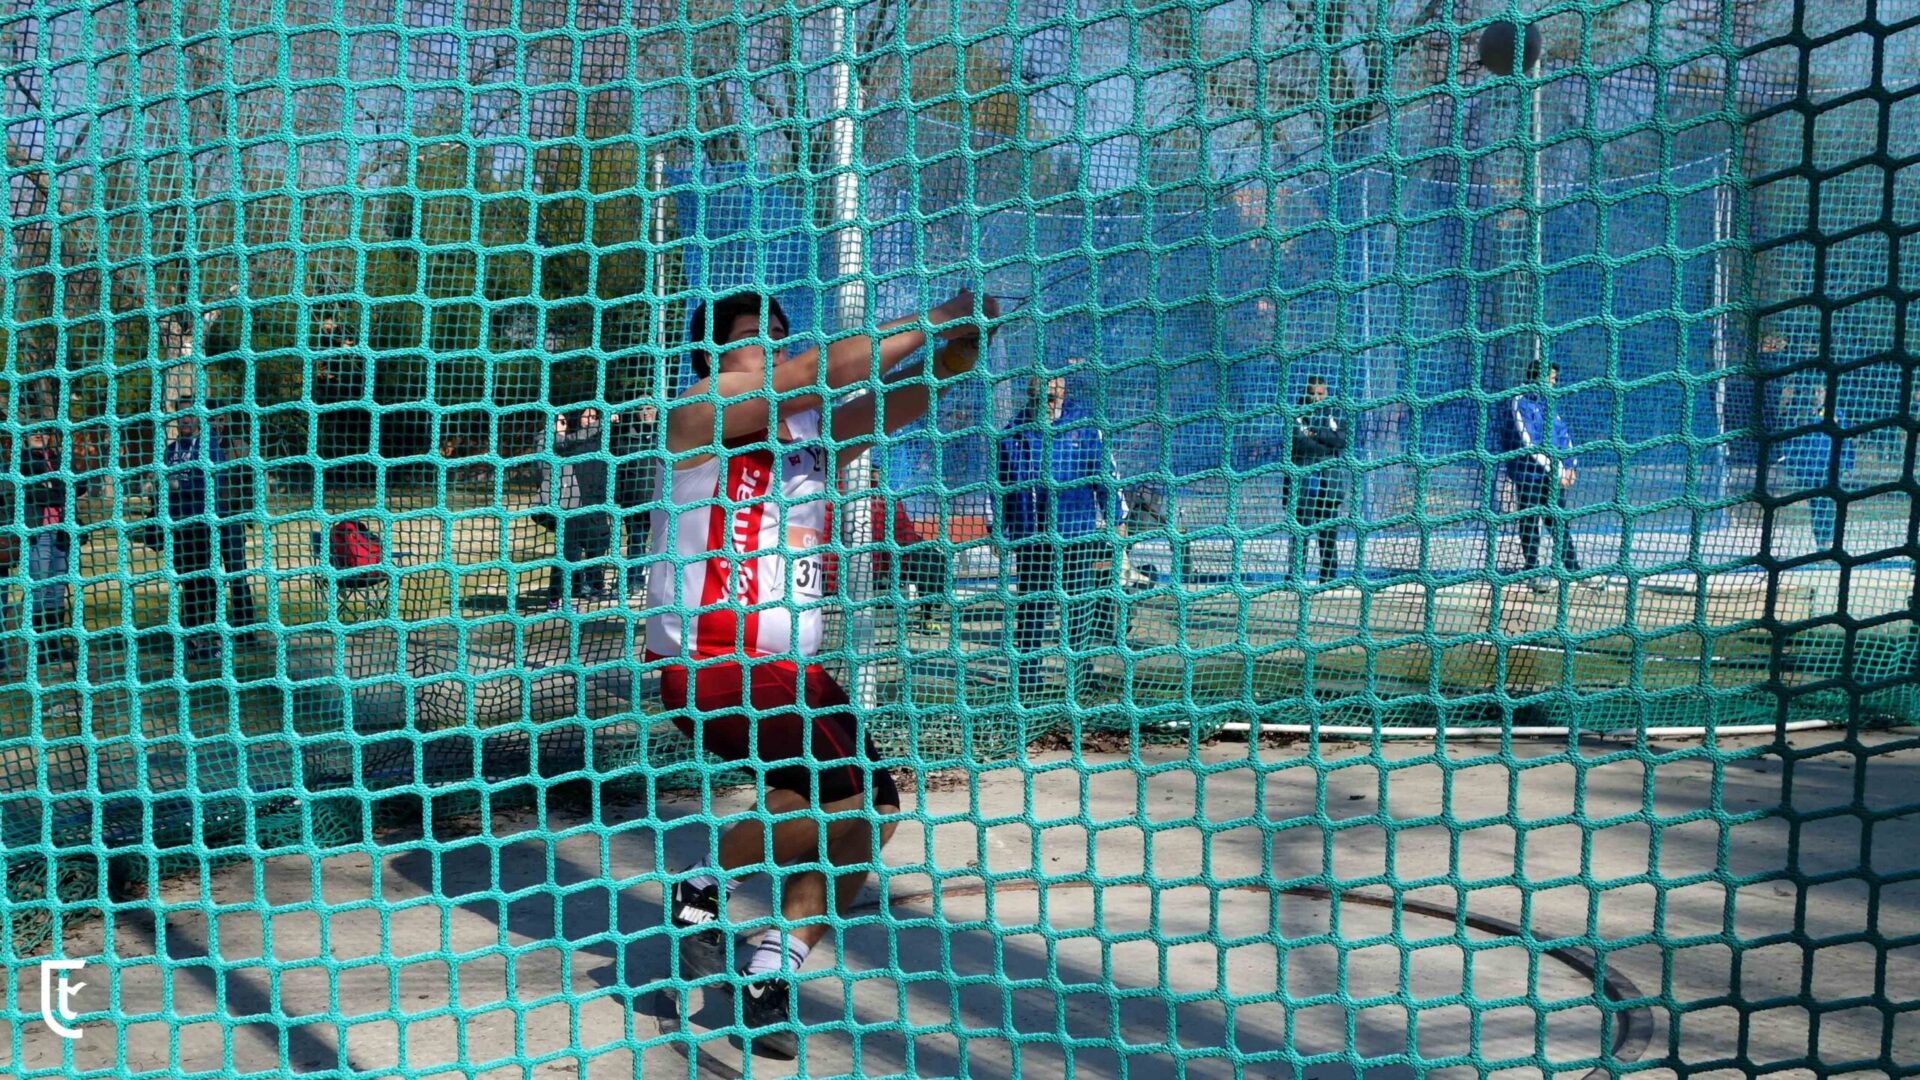 Juan D. Vaquerizo minima campeonato europa junior en la jaula de lanzamiento